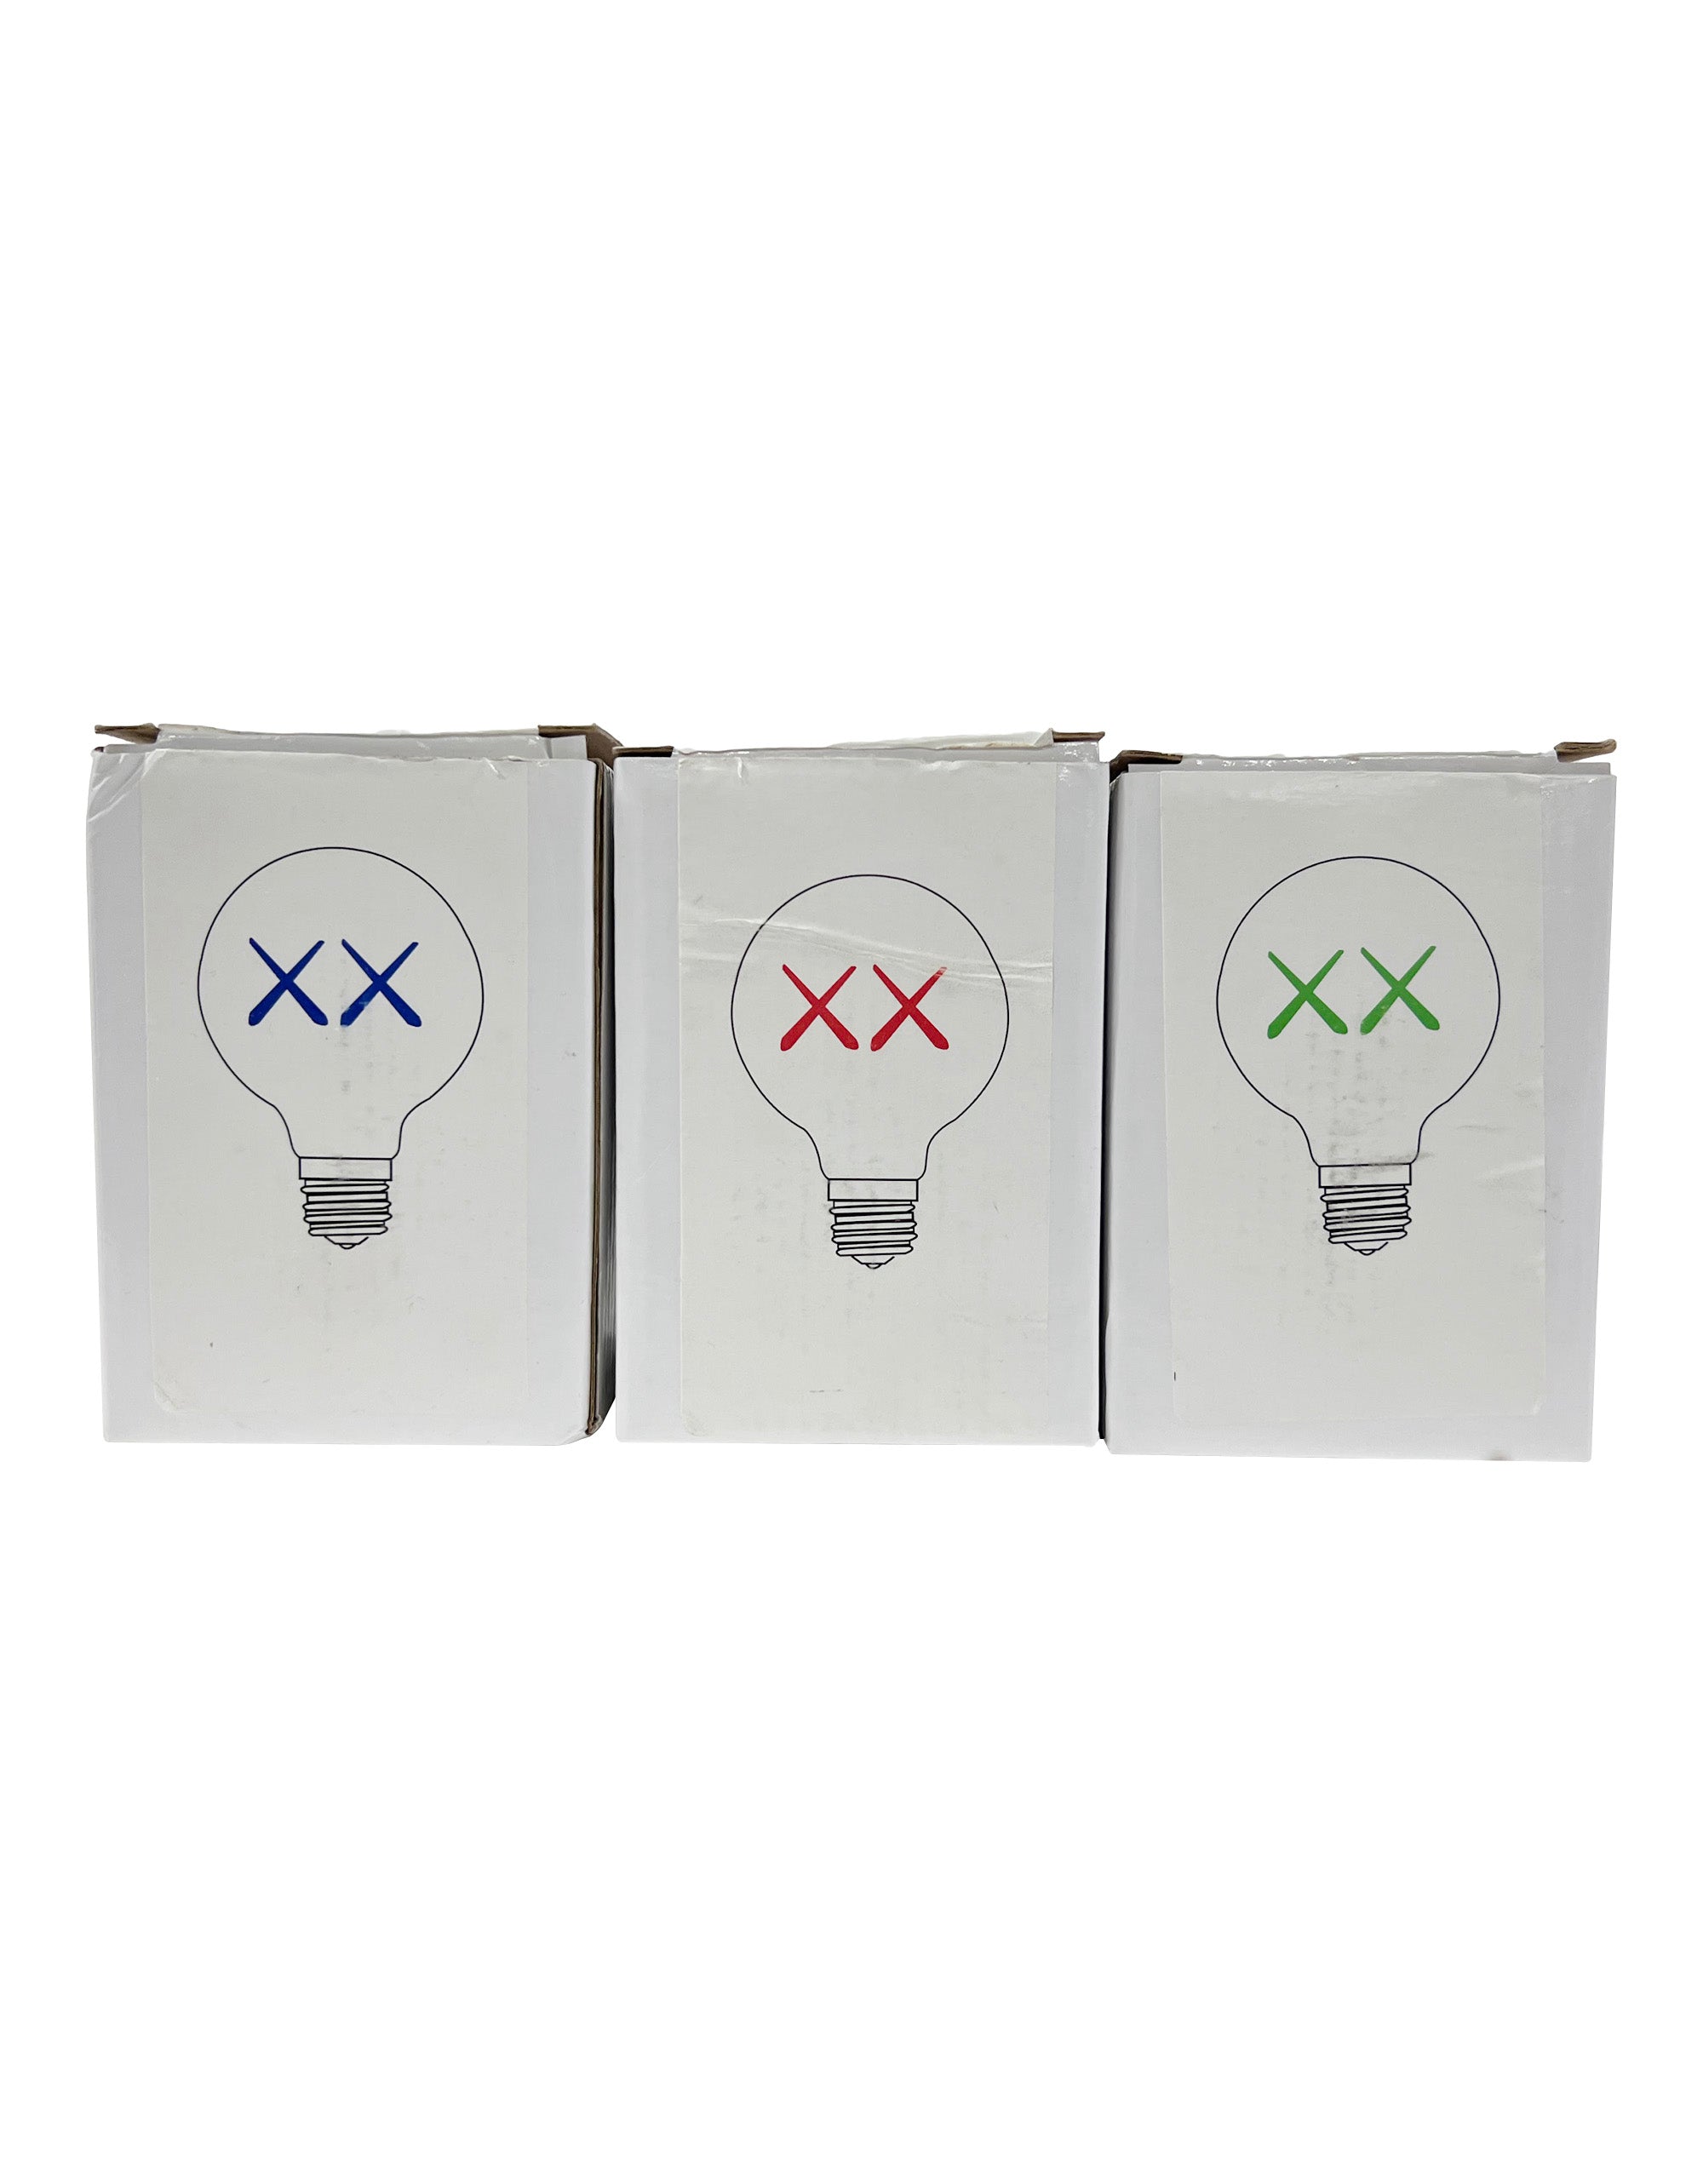 KAWS - XX Lightbulb For The Standard Hotel Set of 3, 2011